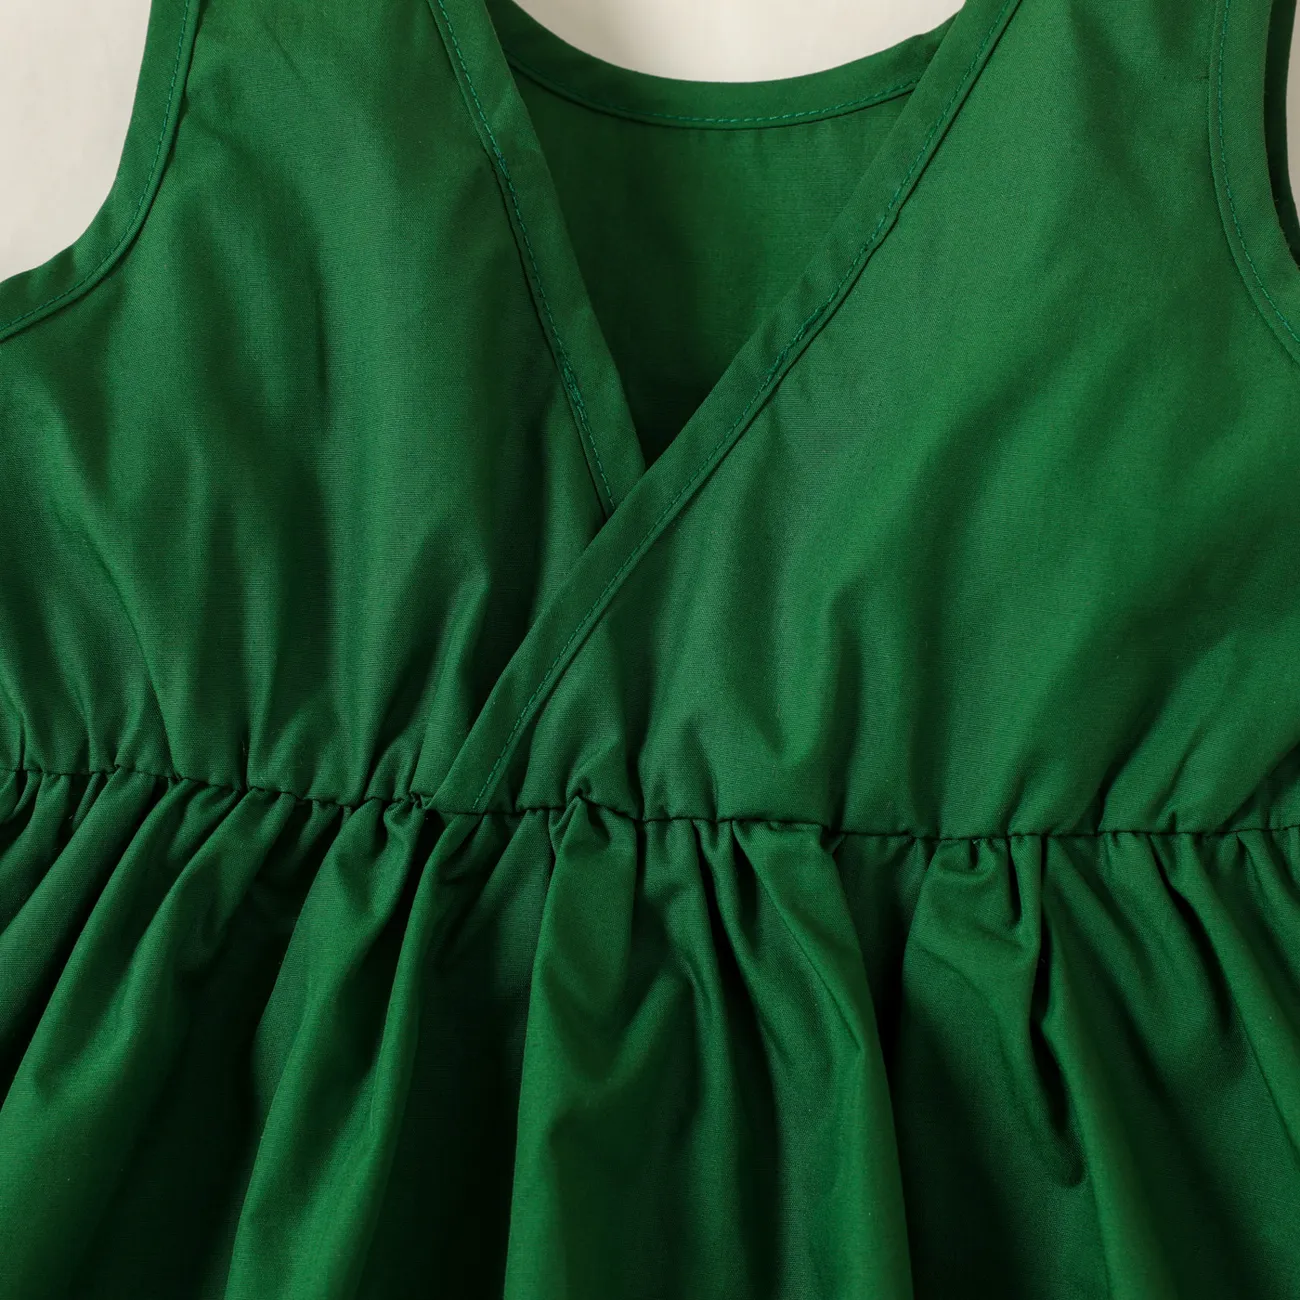 Toddler Girl 3D Floral Design Back V Neck Solid Color Sleeveless Dress Green big image 1